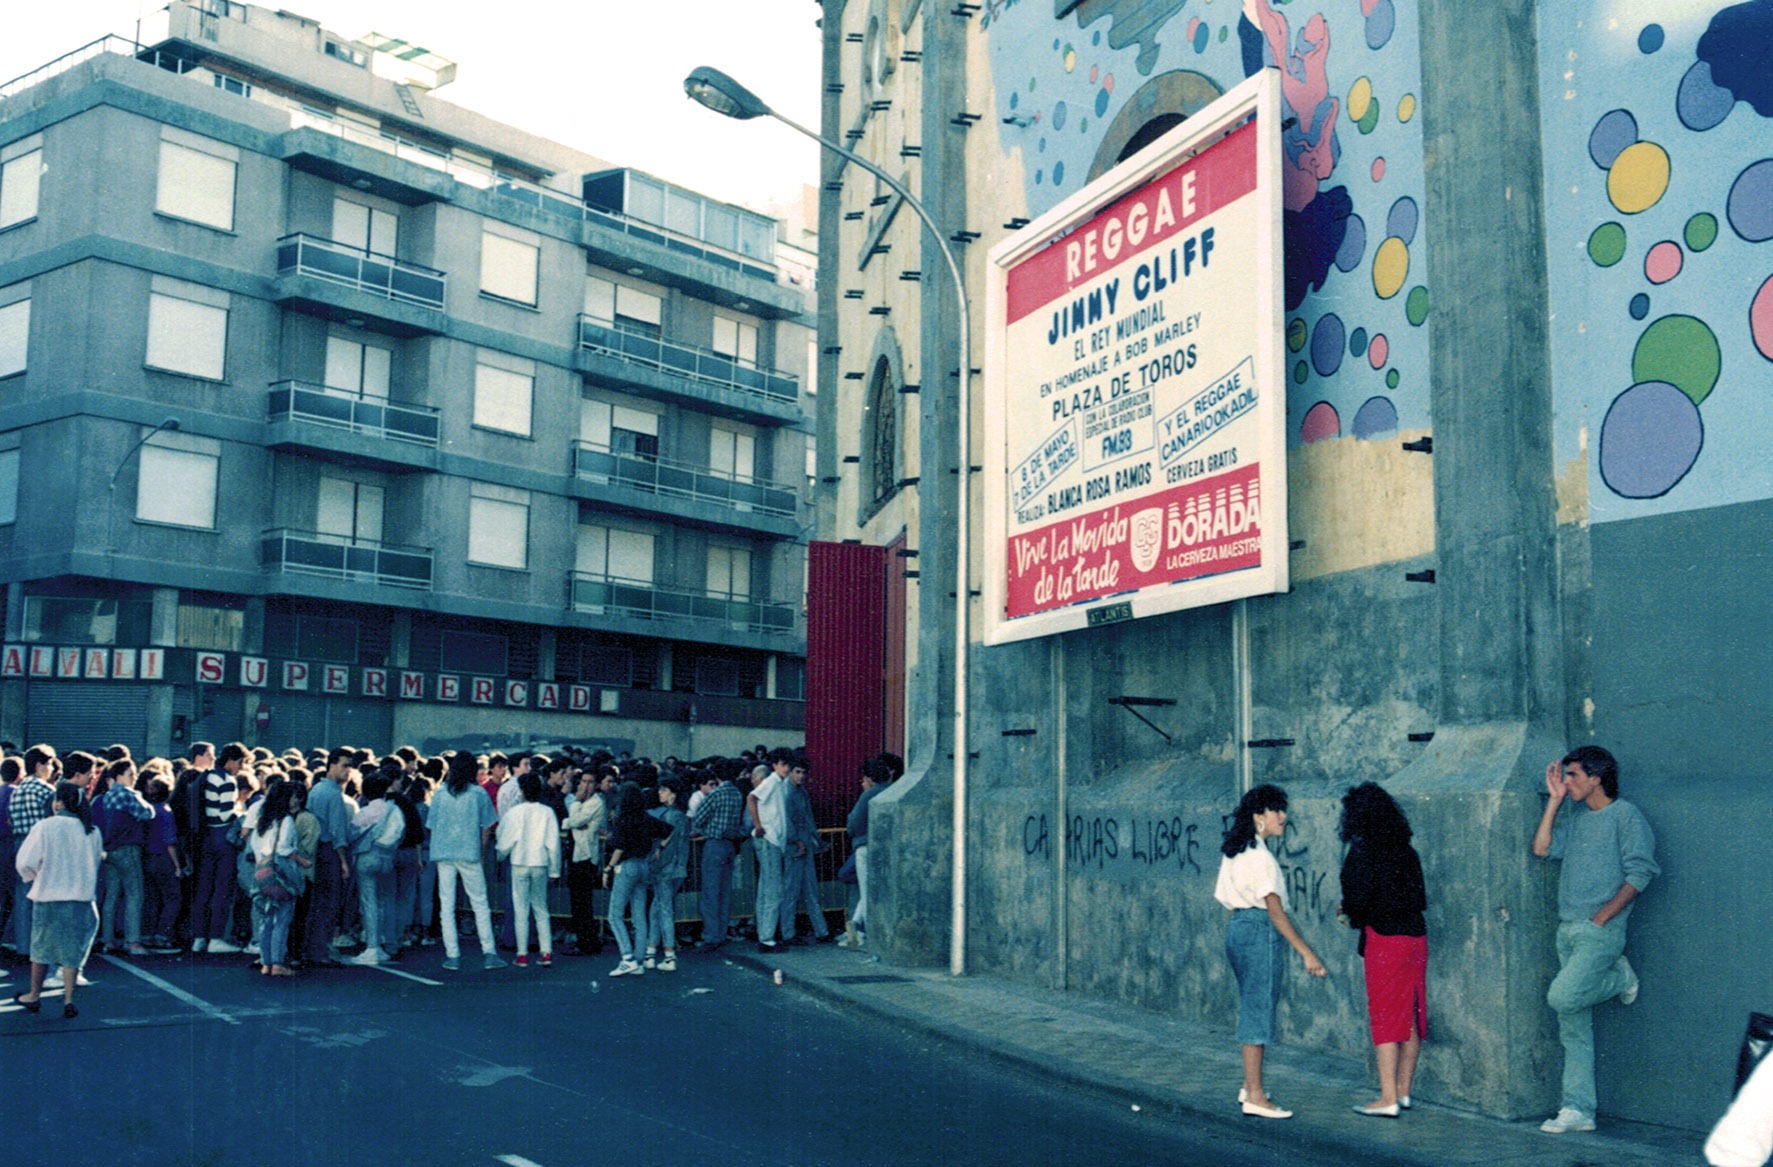 Concierto de Jimmy Cliff en la plaza de Toros de Santa Cruz de Tenerife en 1988